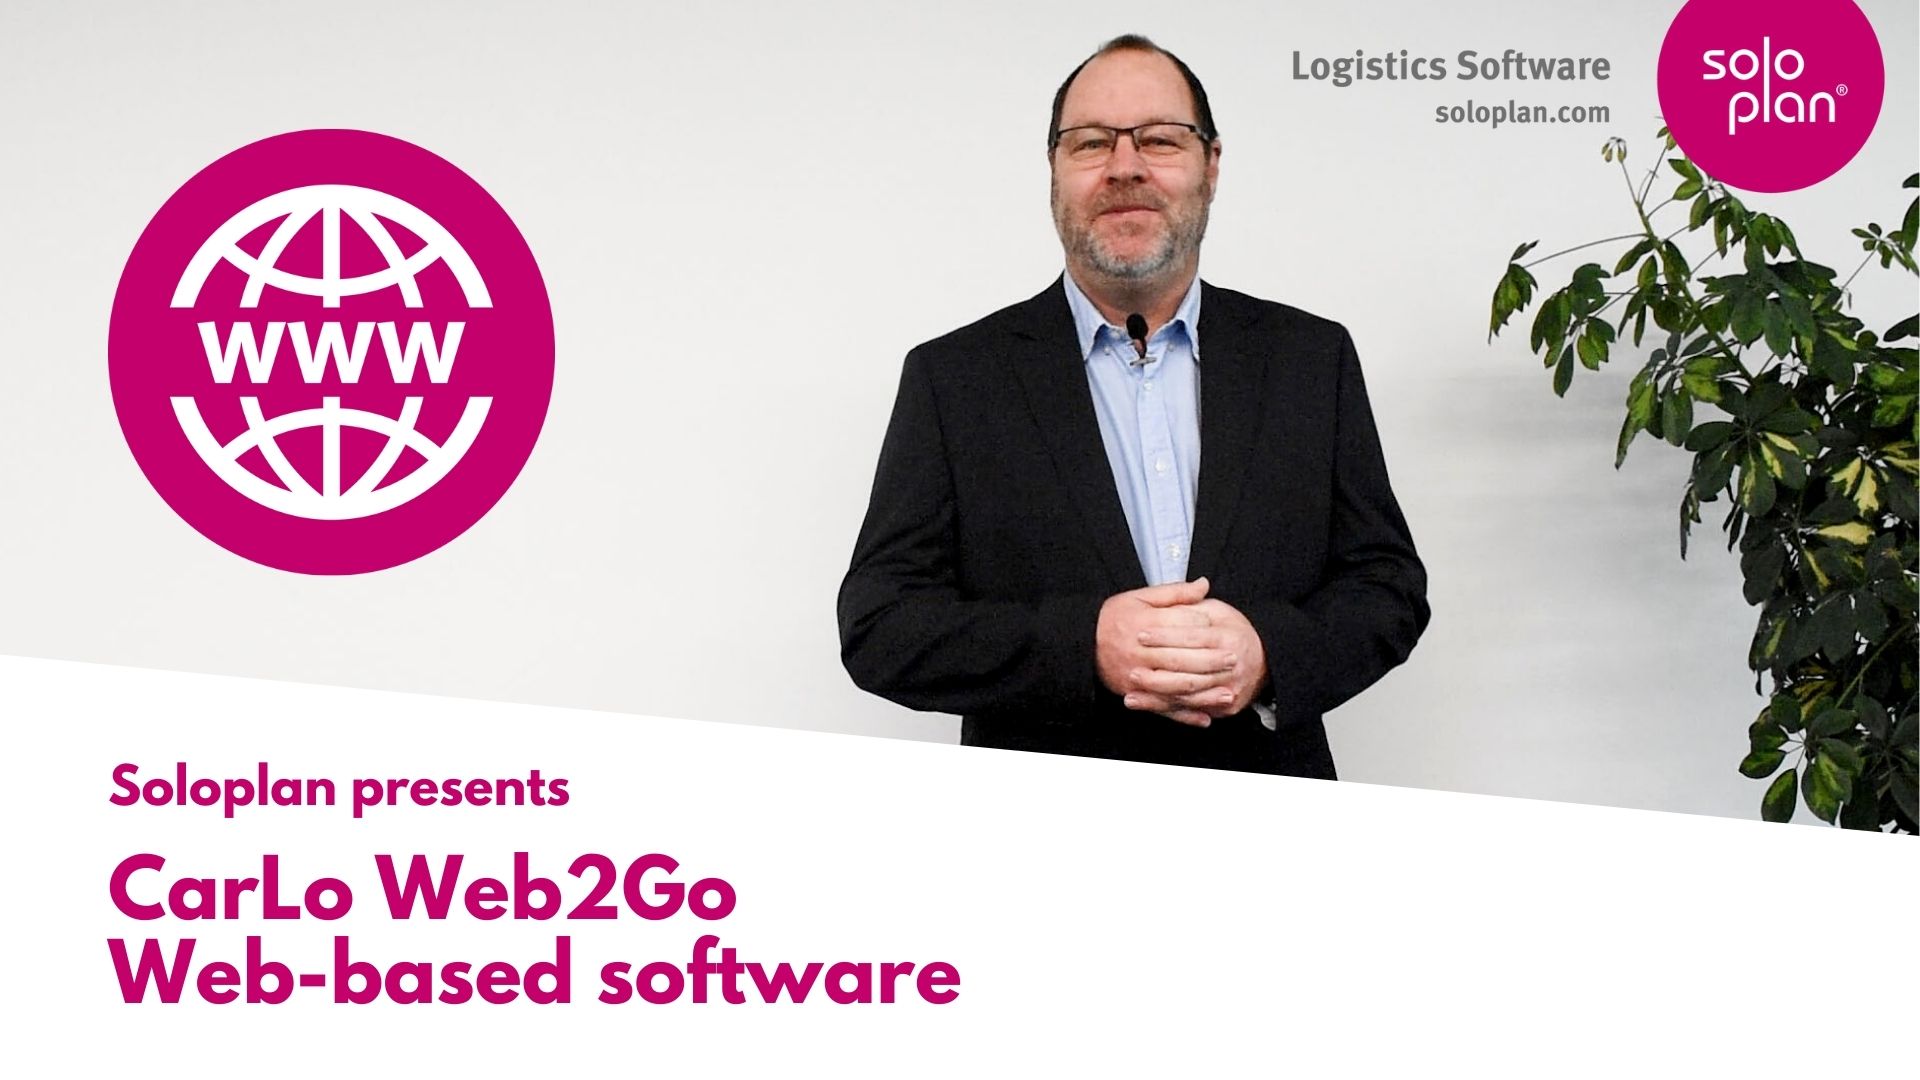 CarLo Web2Go – Le logiciel pour la logistique basé sur le Web